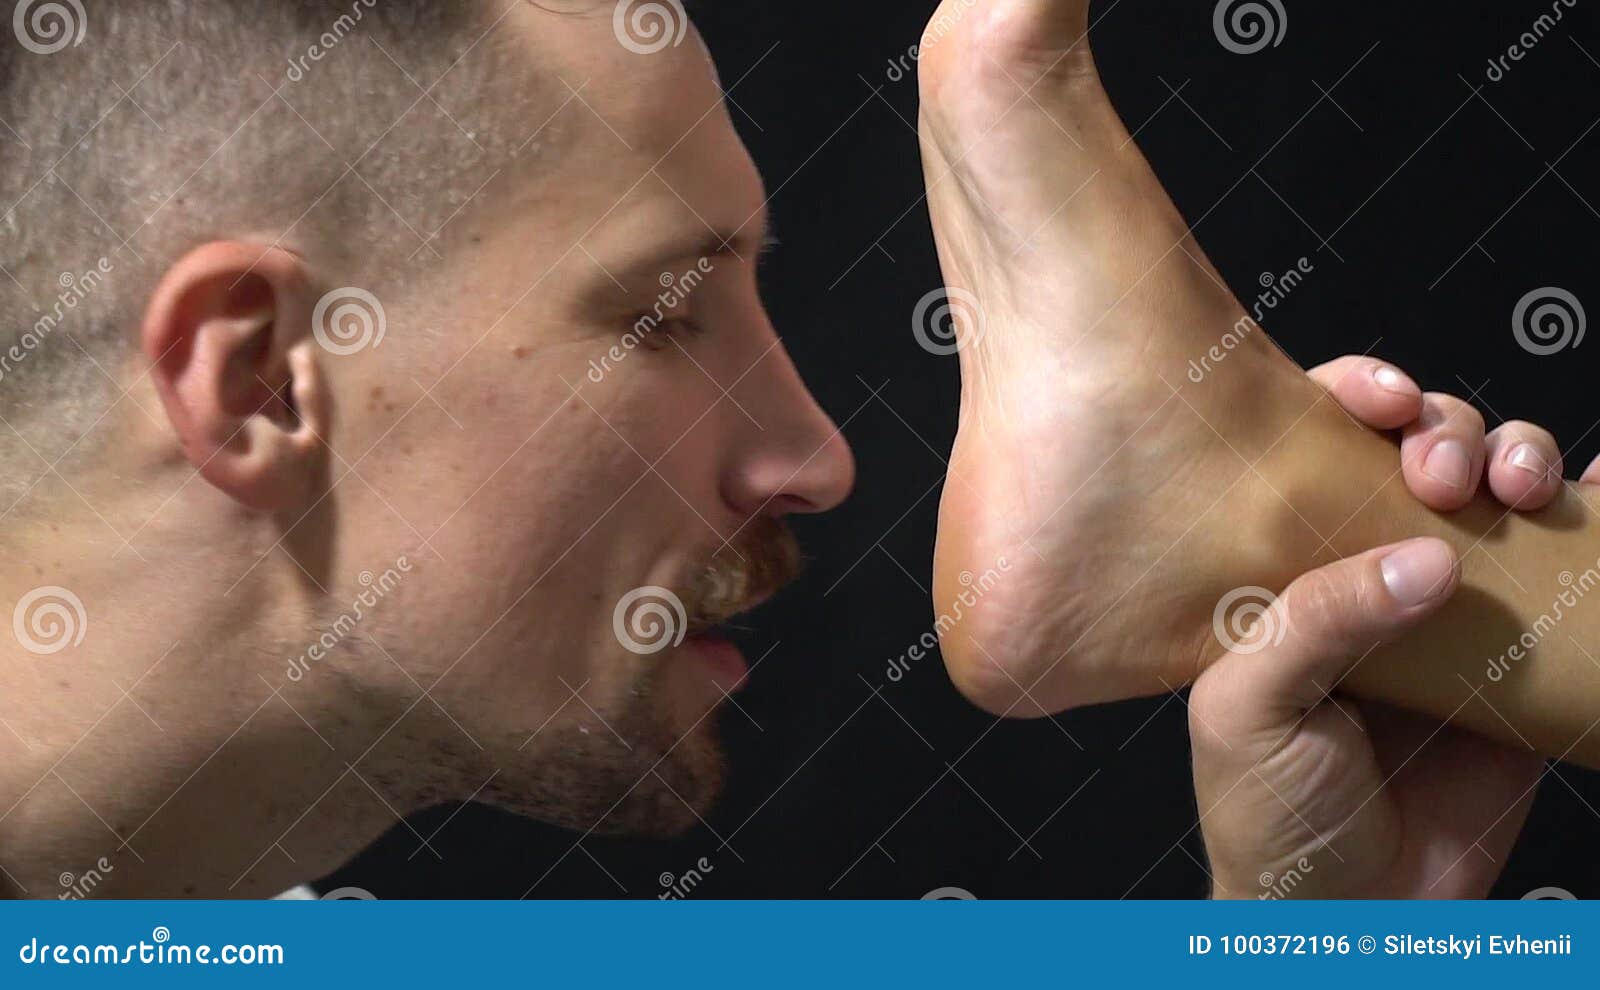 Foot fetish feet licking